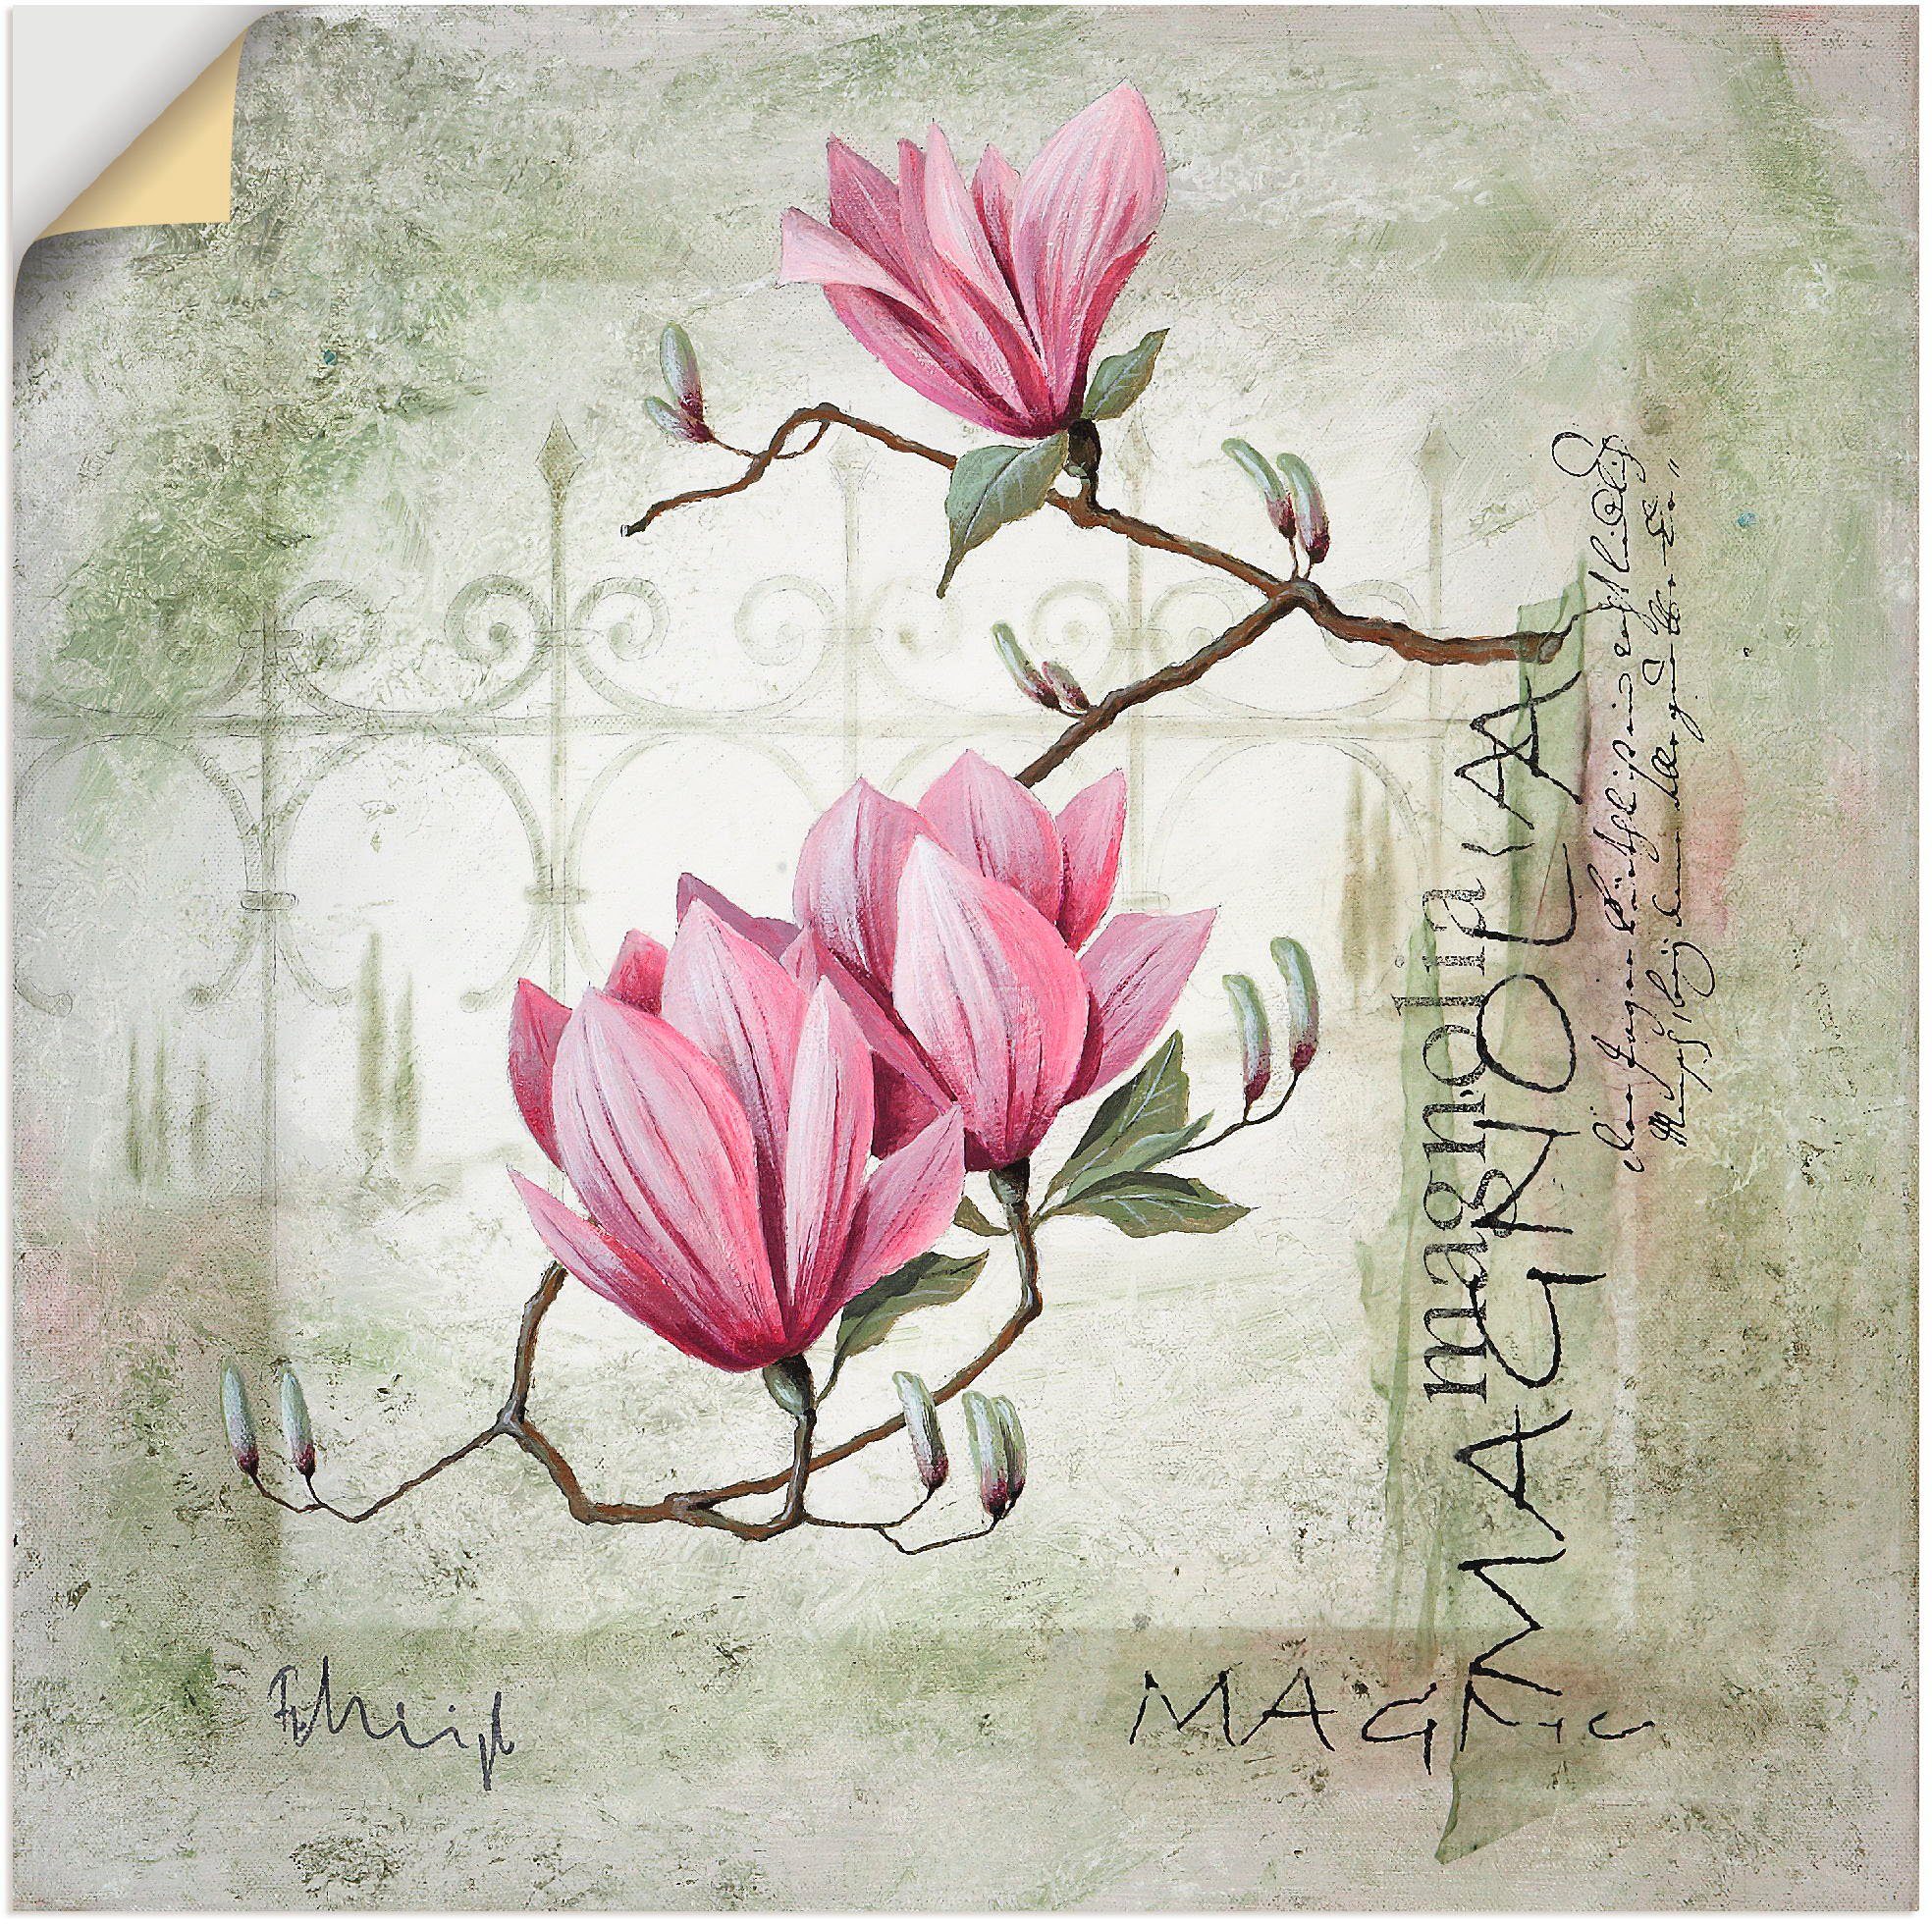 Artland Artprint Pinkkleurige magnolia in vele afmetingen & productsoorten -artprint op linnen, poster, muursticker / wandfolie ook geschikt voor de badkamer (1 stuk)